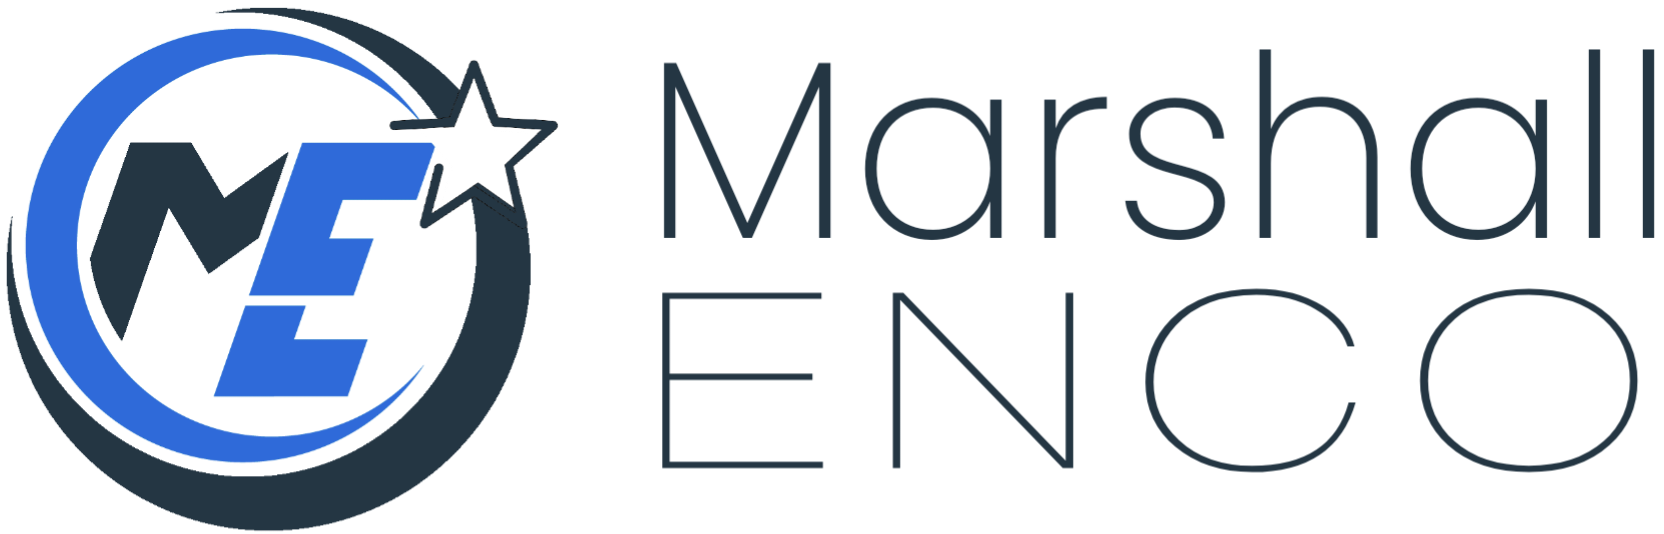 Marshall Energy Company